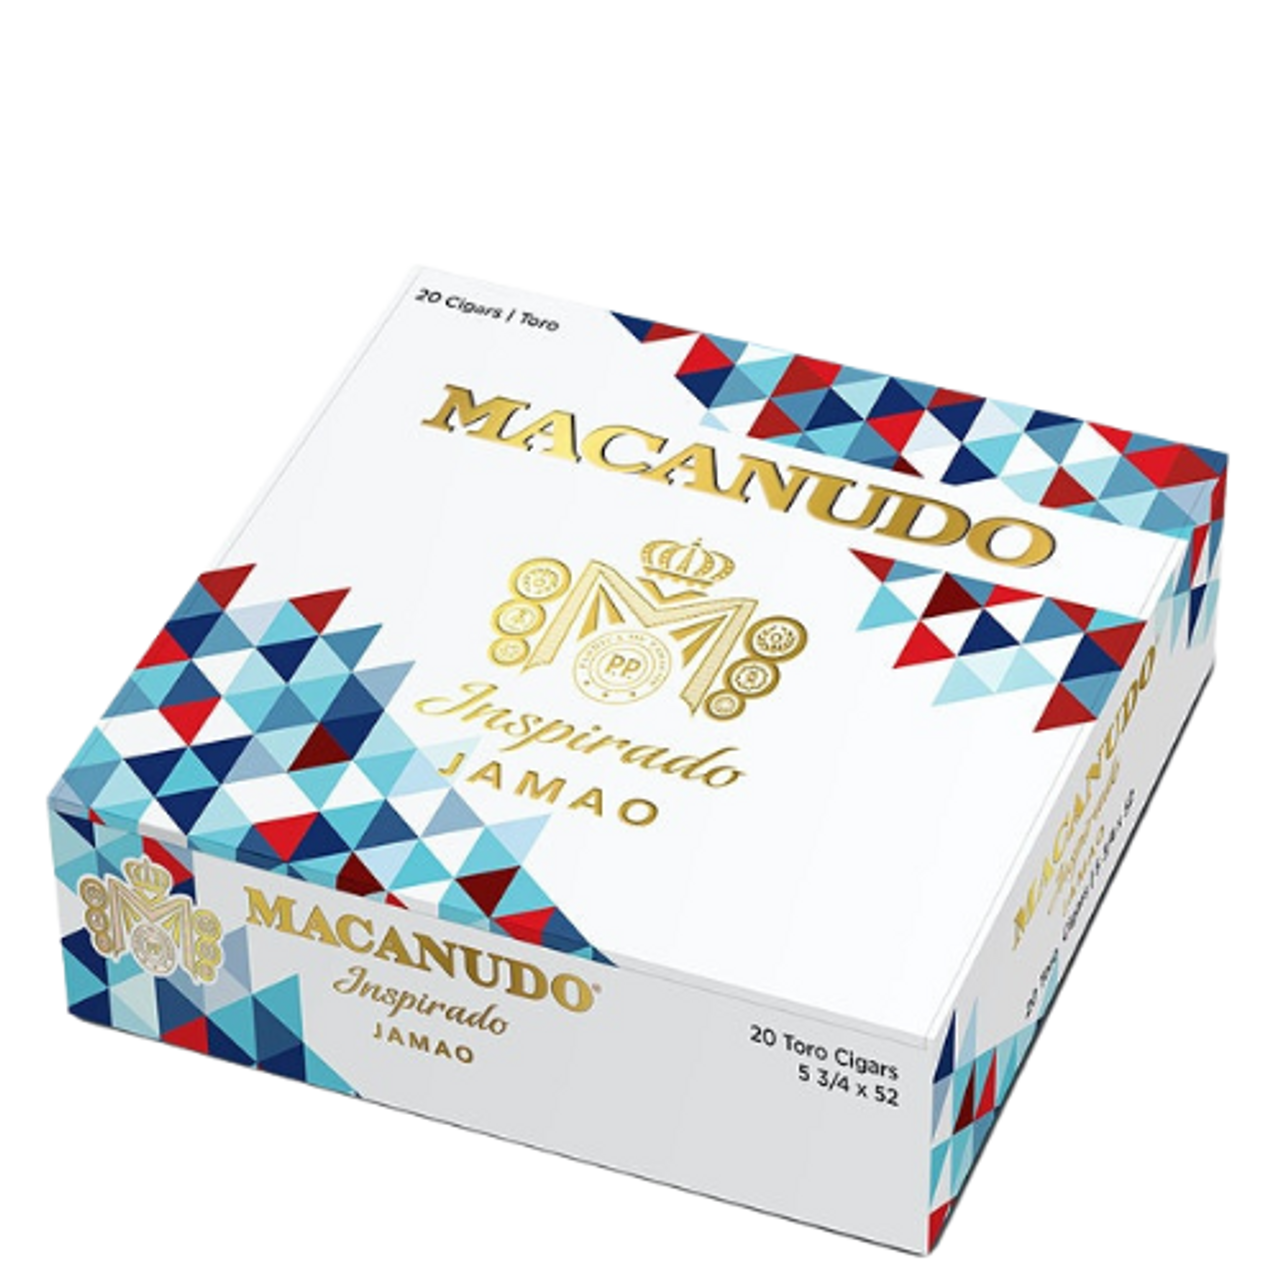 Macanudo Inspirado Jamao Limited Edition